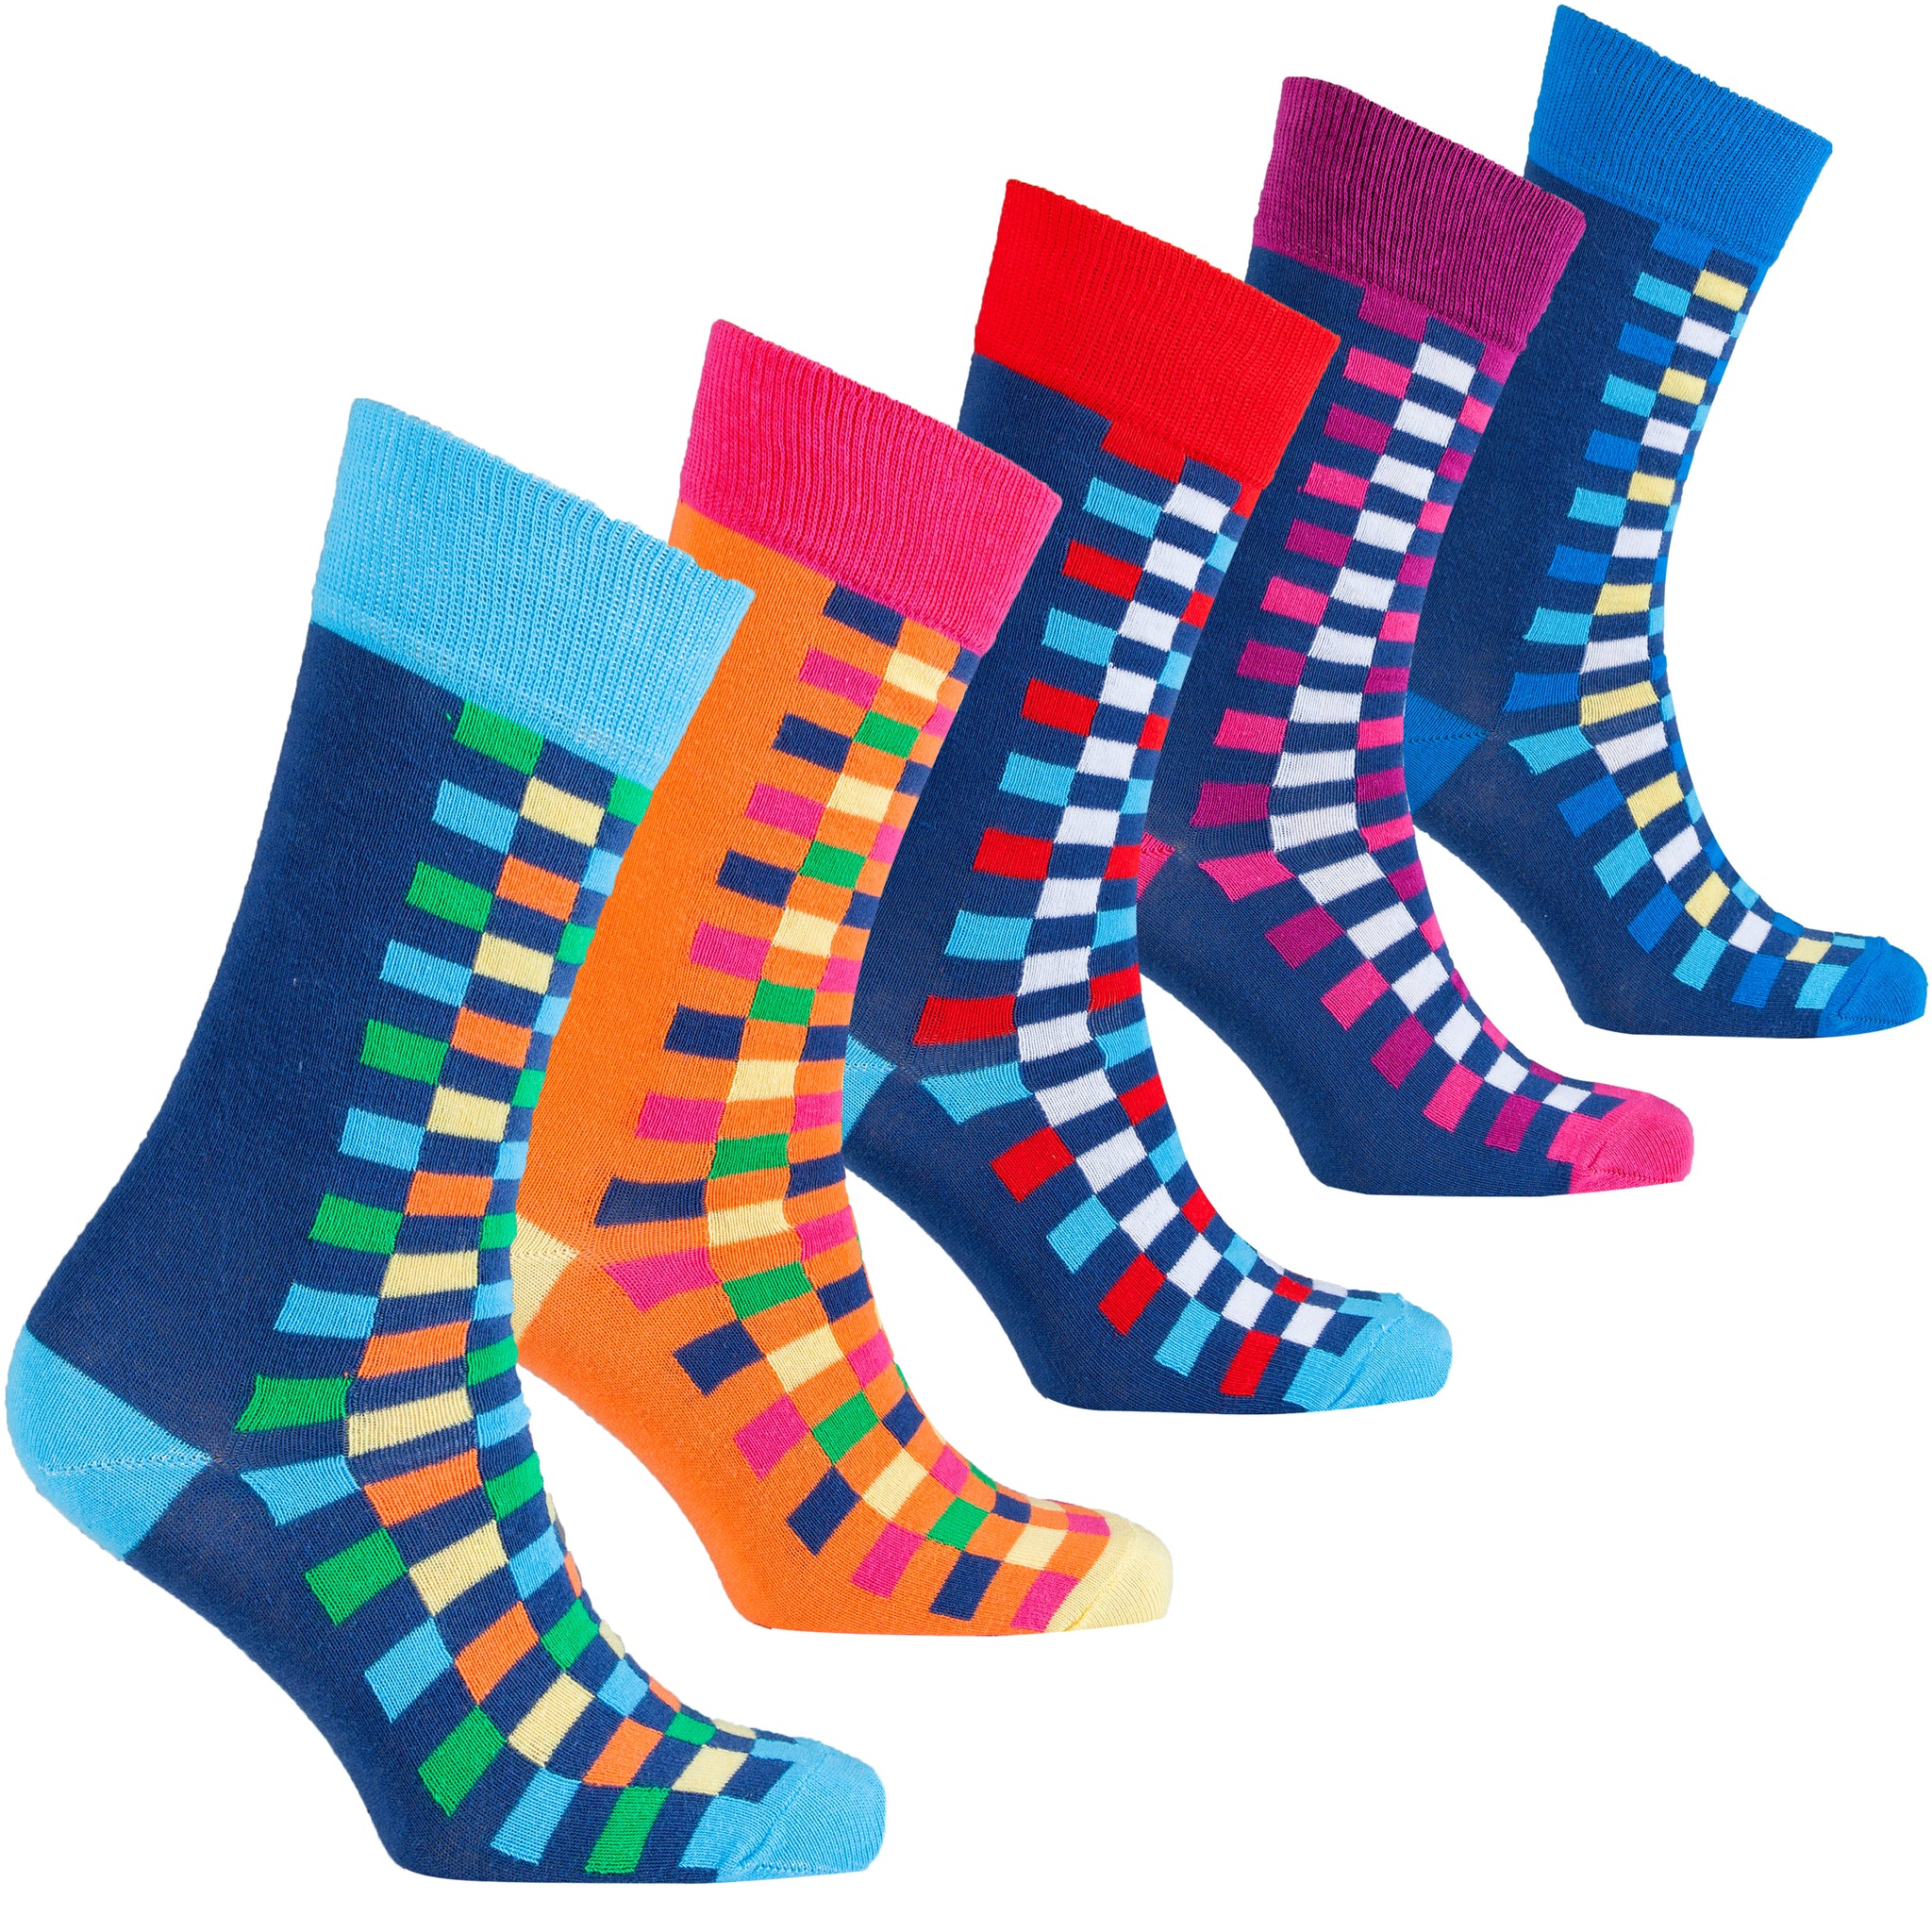 Men's Colorful Squares Socks